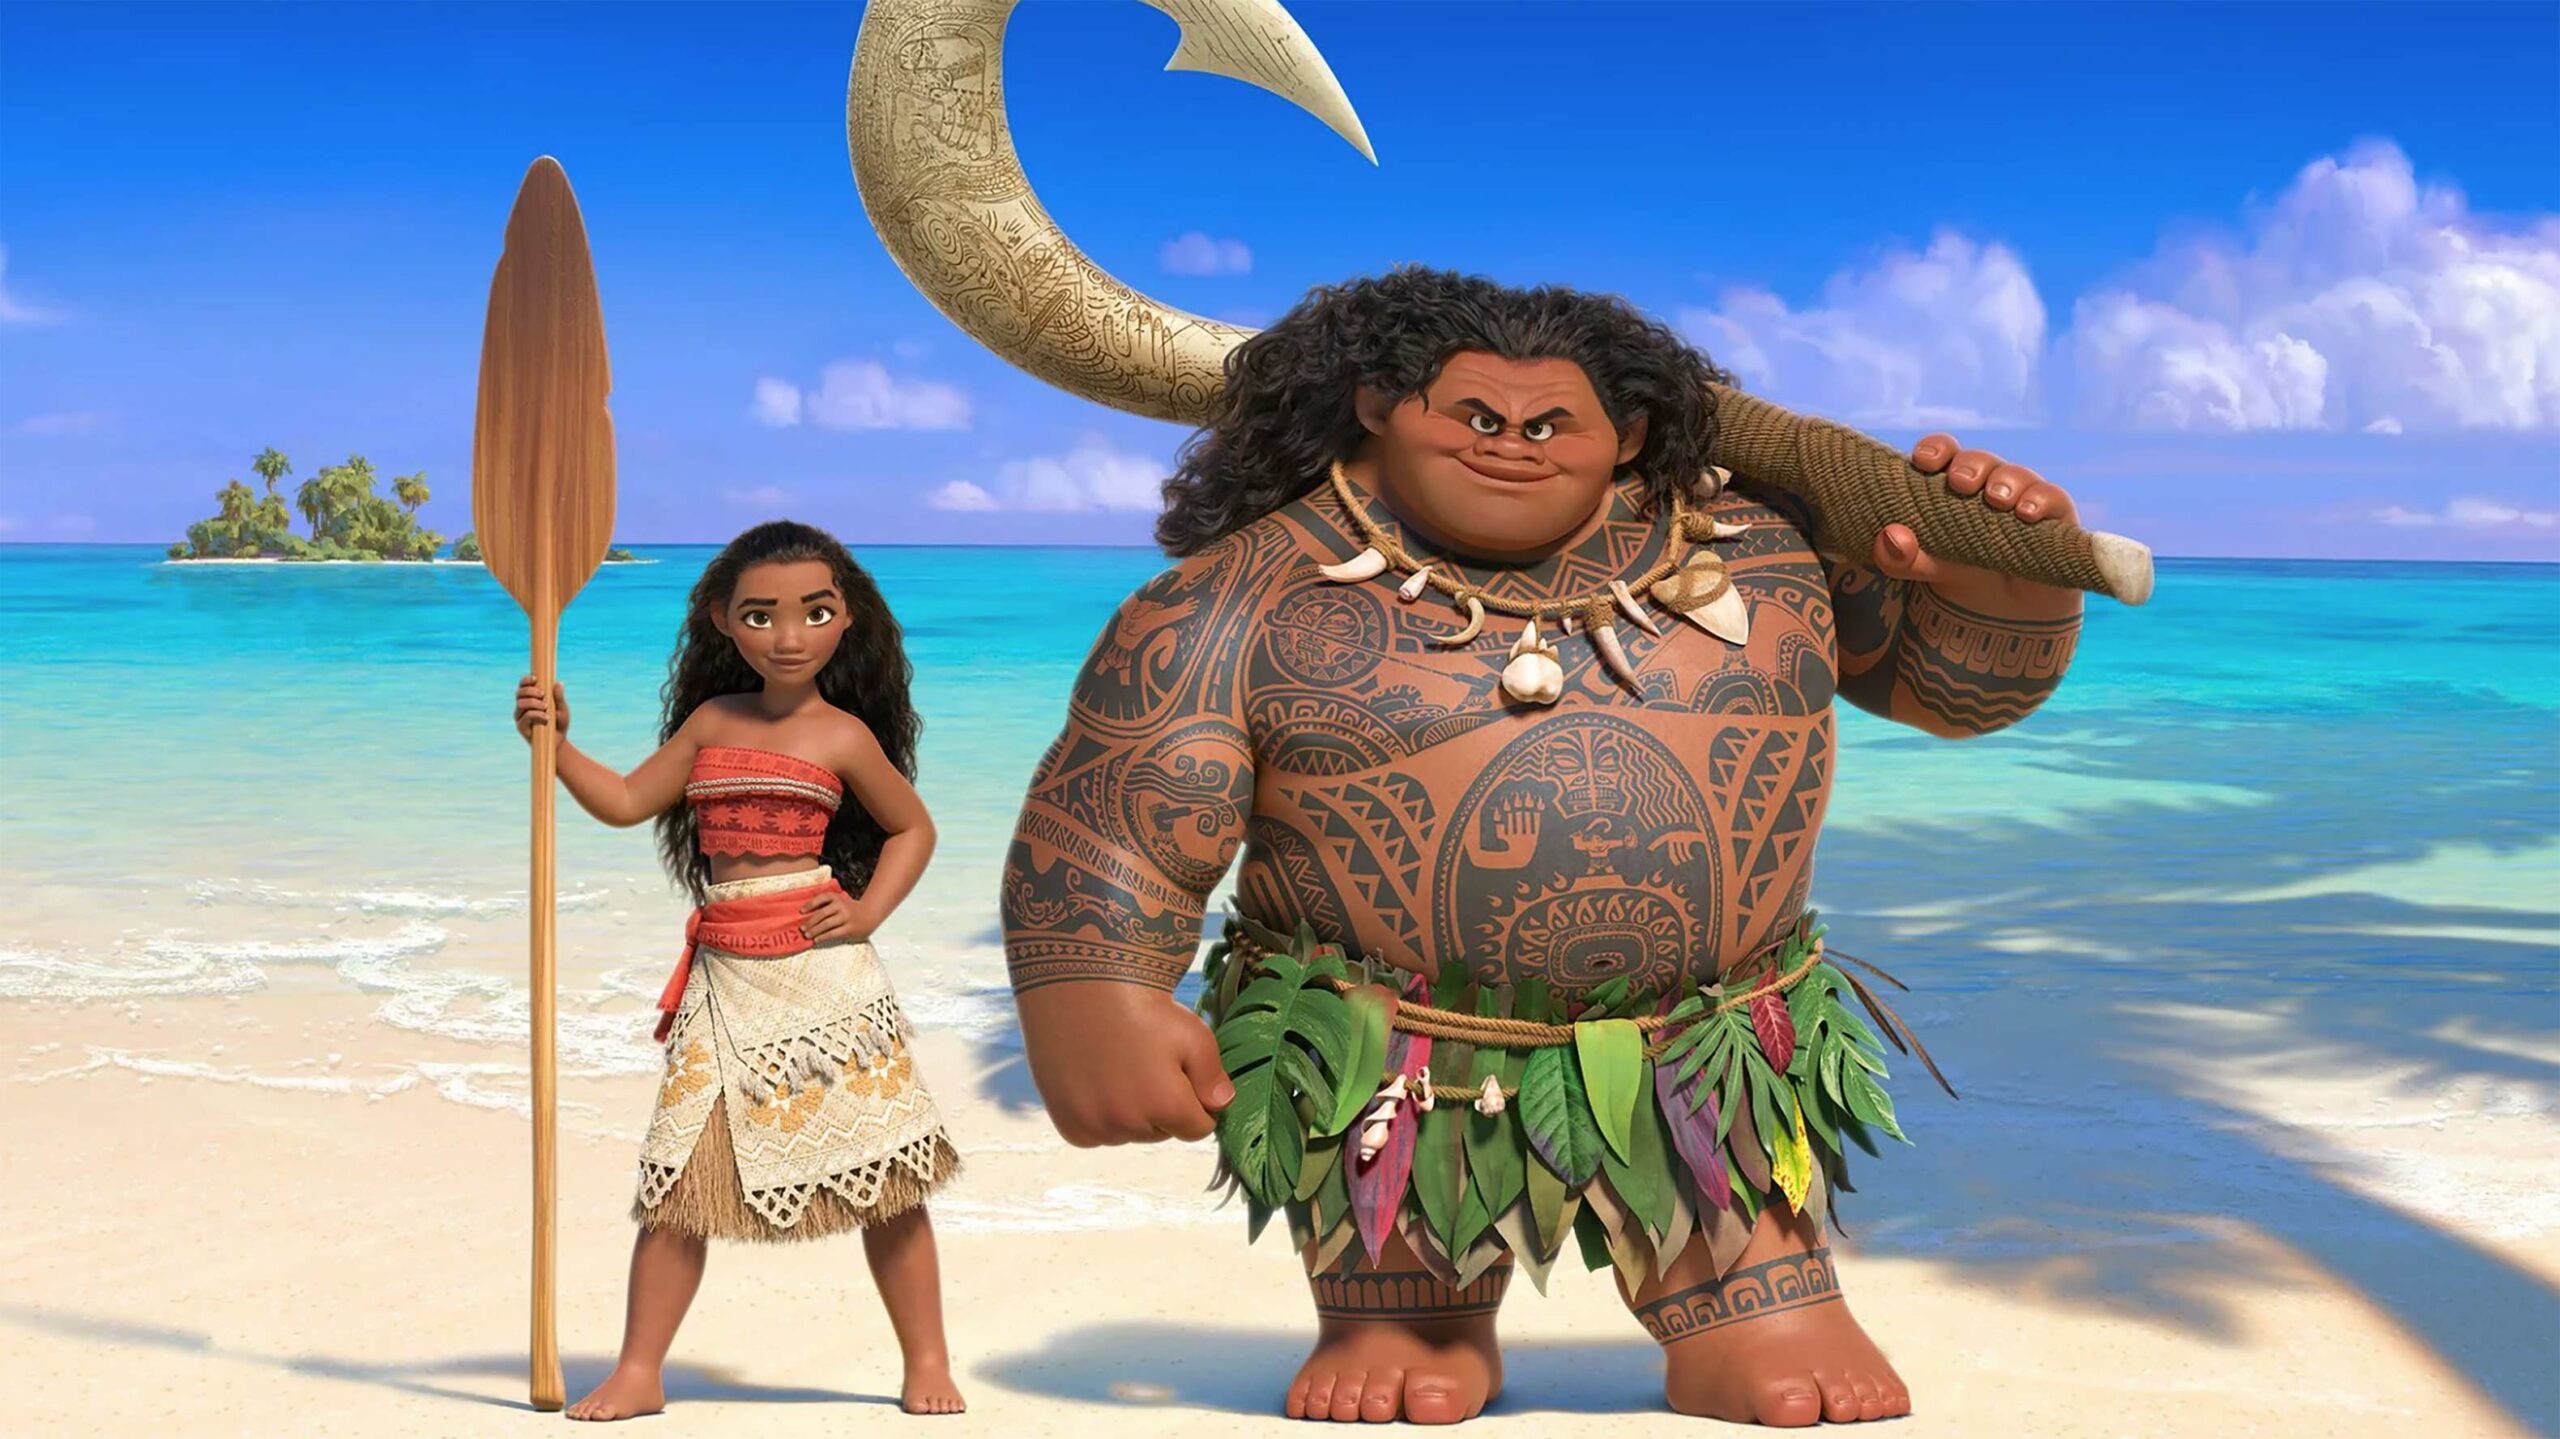 Moana and Maui from 2016's Moana (Image credit: Disney)